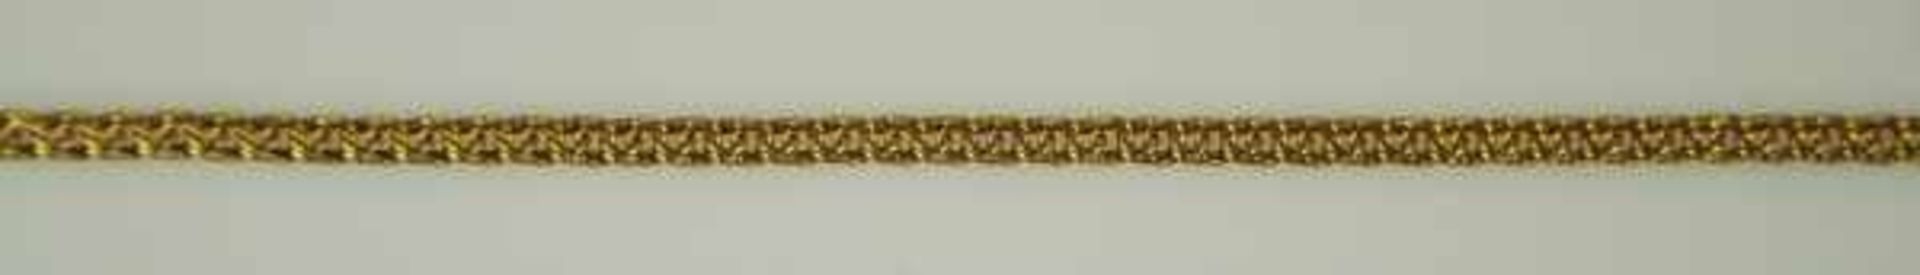 FEINE ARMKETTE durchbrochene Glieder mit Ringverschluß, Gelbgold 18ct, 3,8g, L 17cm - Bild 2 aus 2